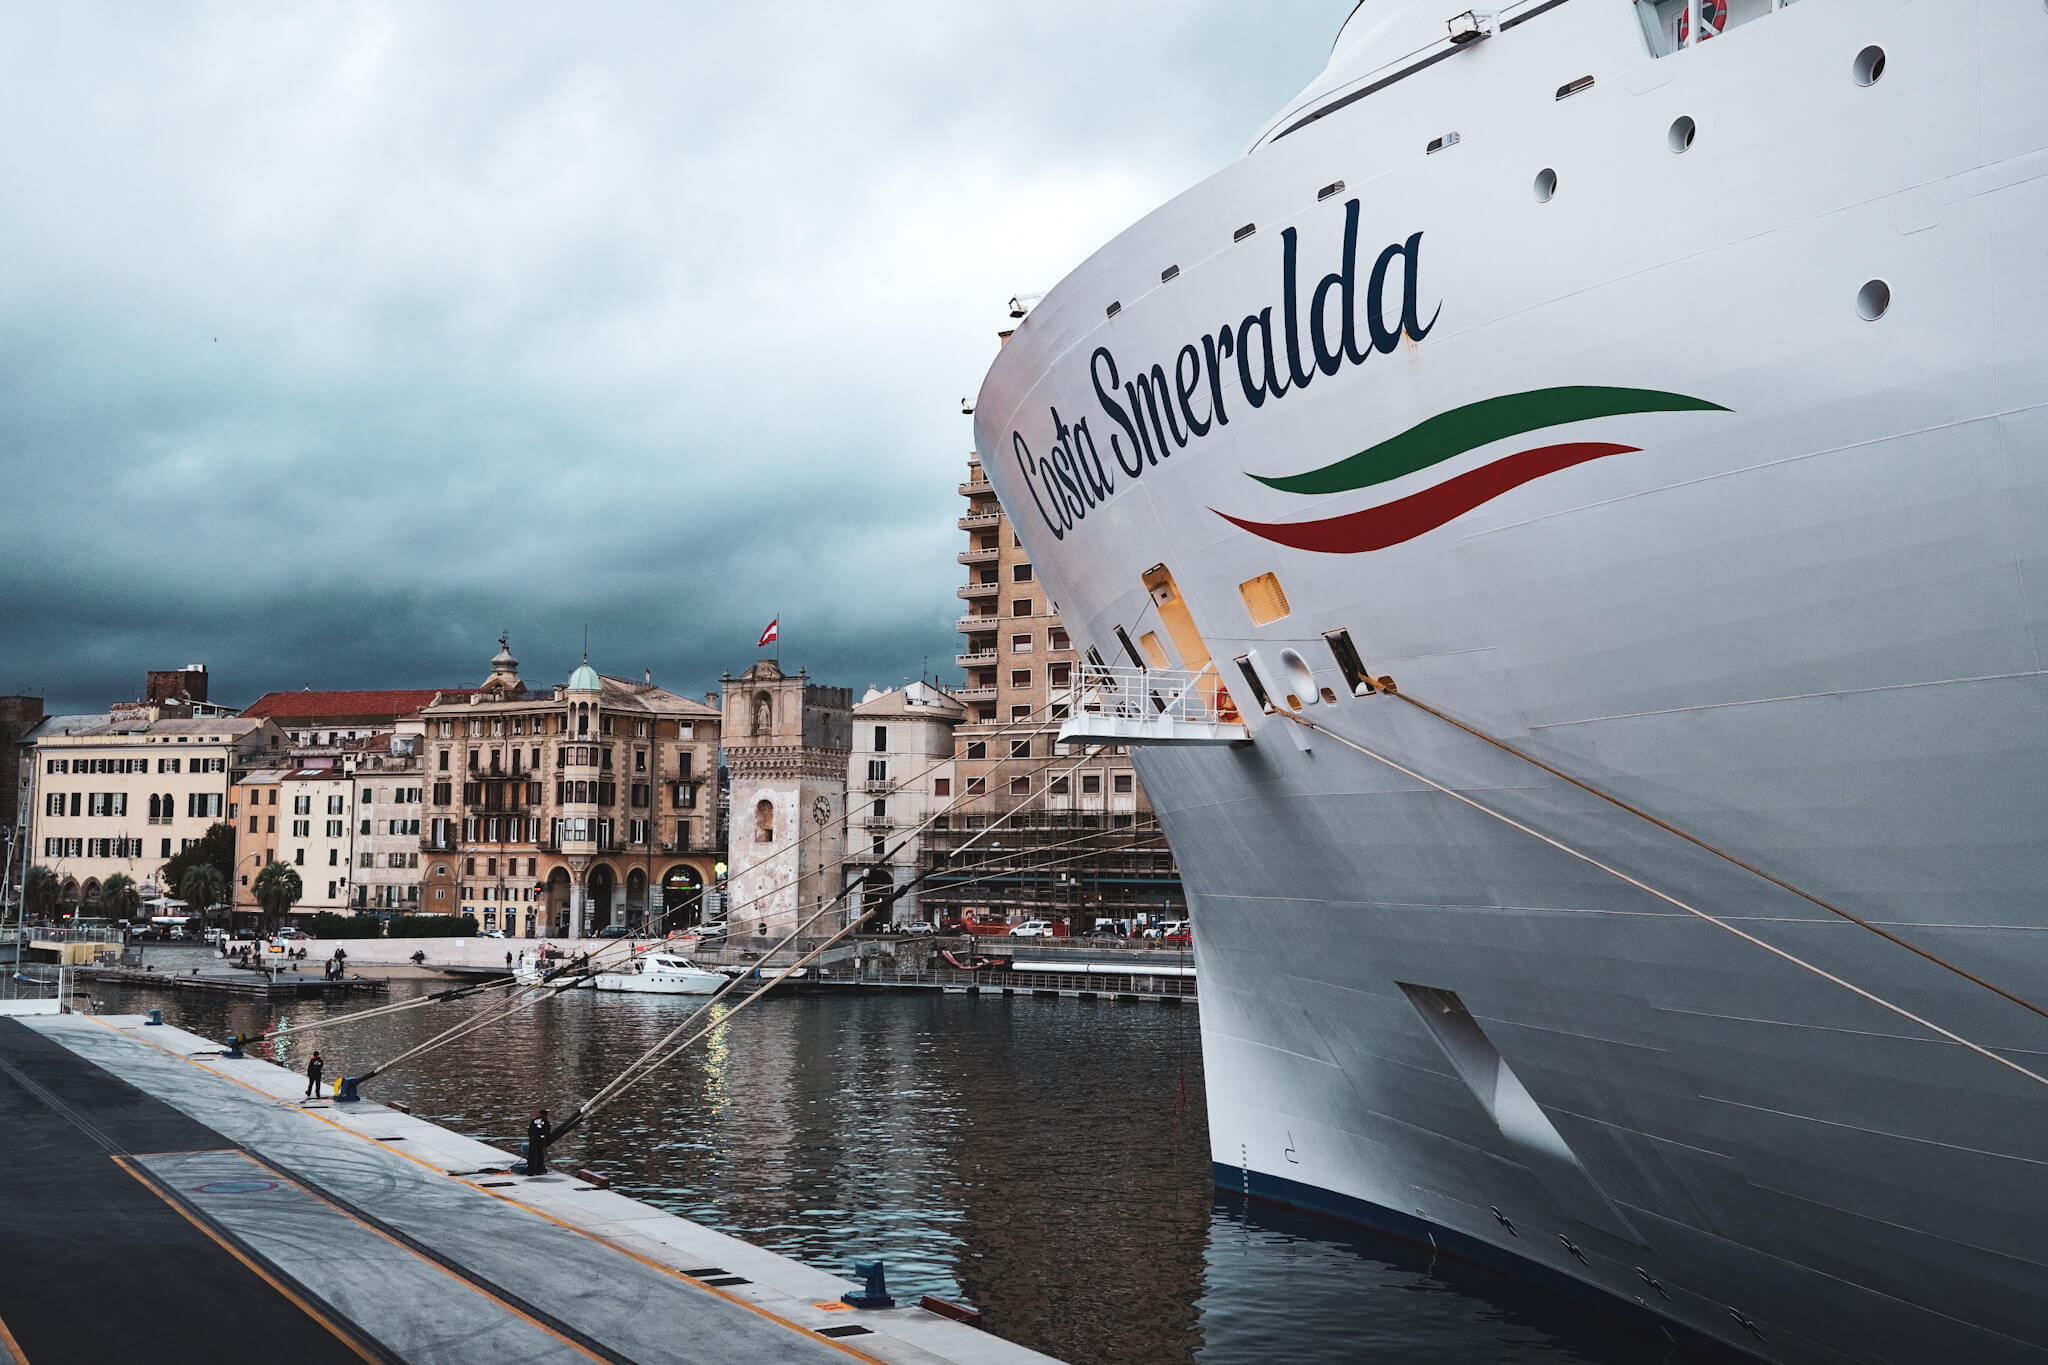 Kreuzfahrtschiff Costa Smeralda liegt im Hafen